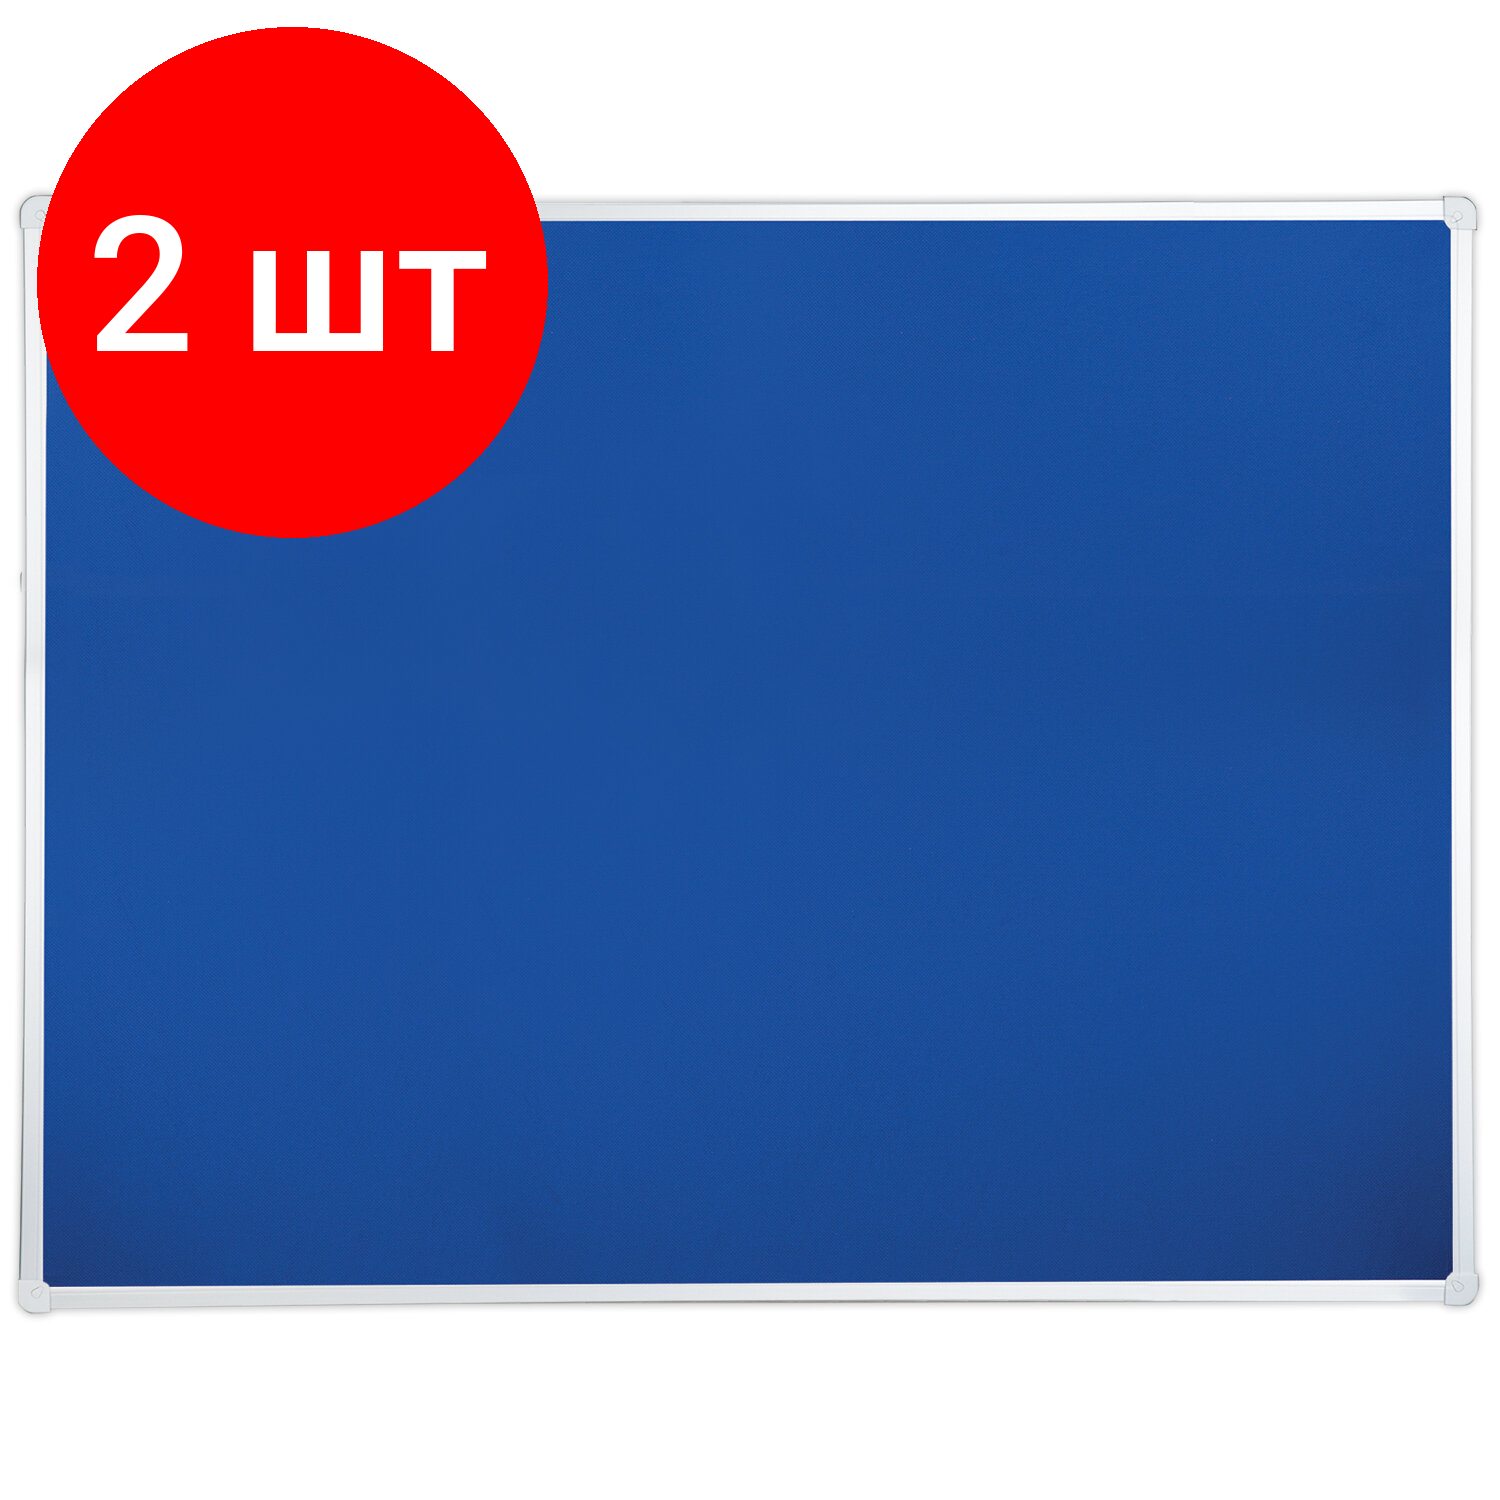 Комплект 2 шт, Доска c текстильным покрытием для объявлений 60х90 см синяя, гарантия 10 ЛЕТ, BRAUBERG, 231700